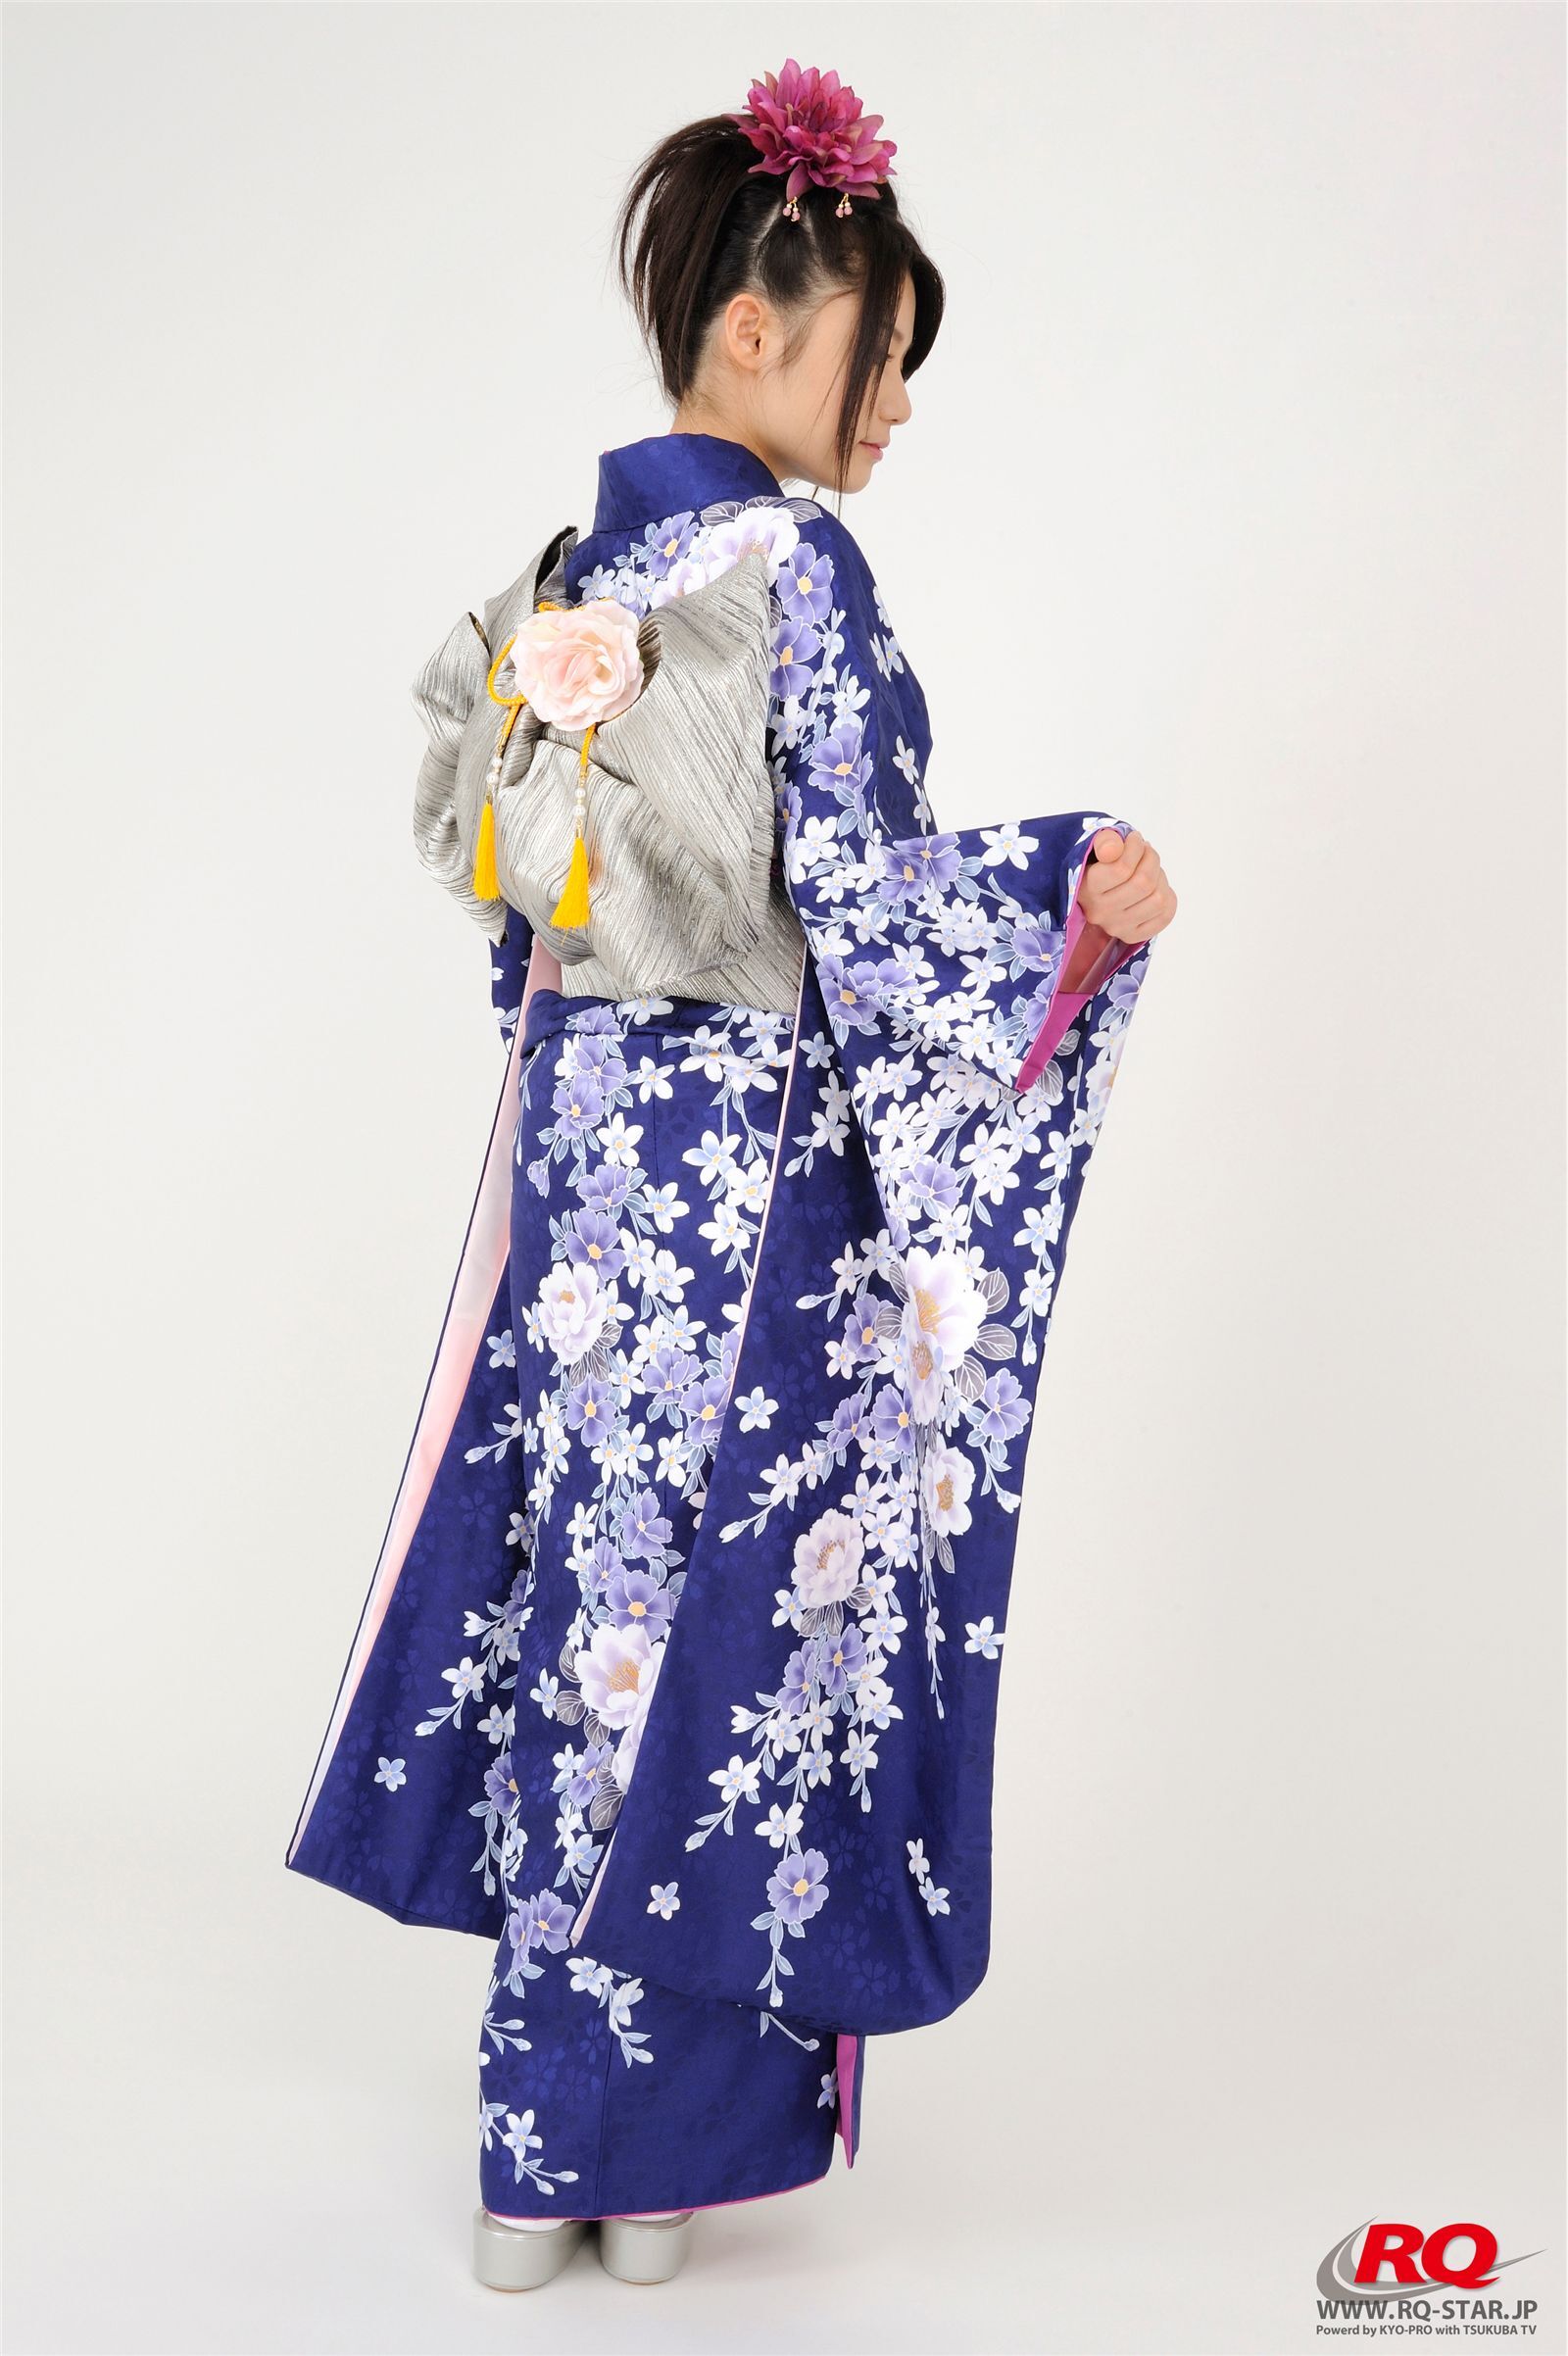 古崎瞳 謹賀新年 Kimono  rq-star NO.00068 日本性感美女